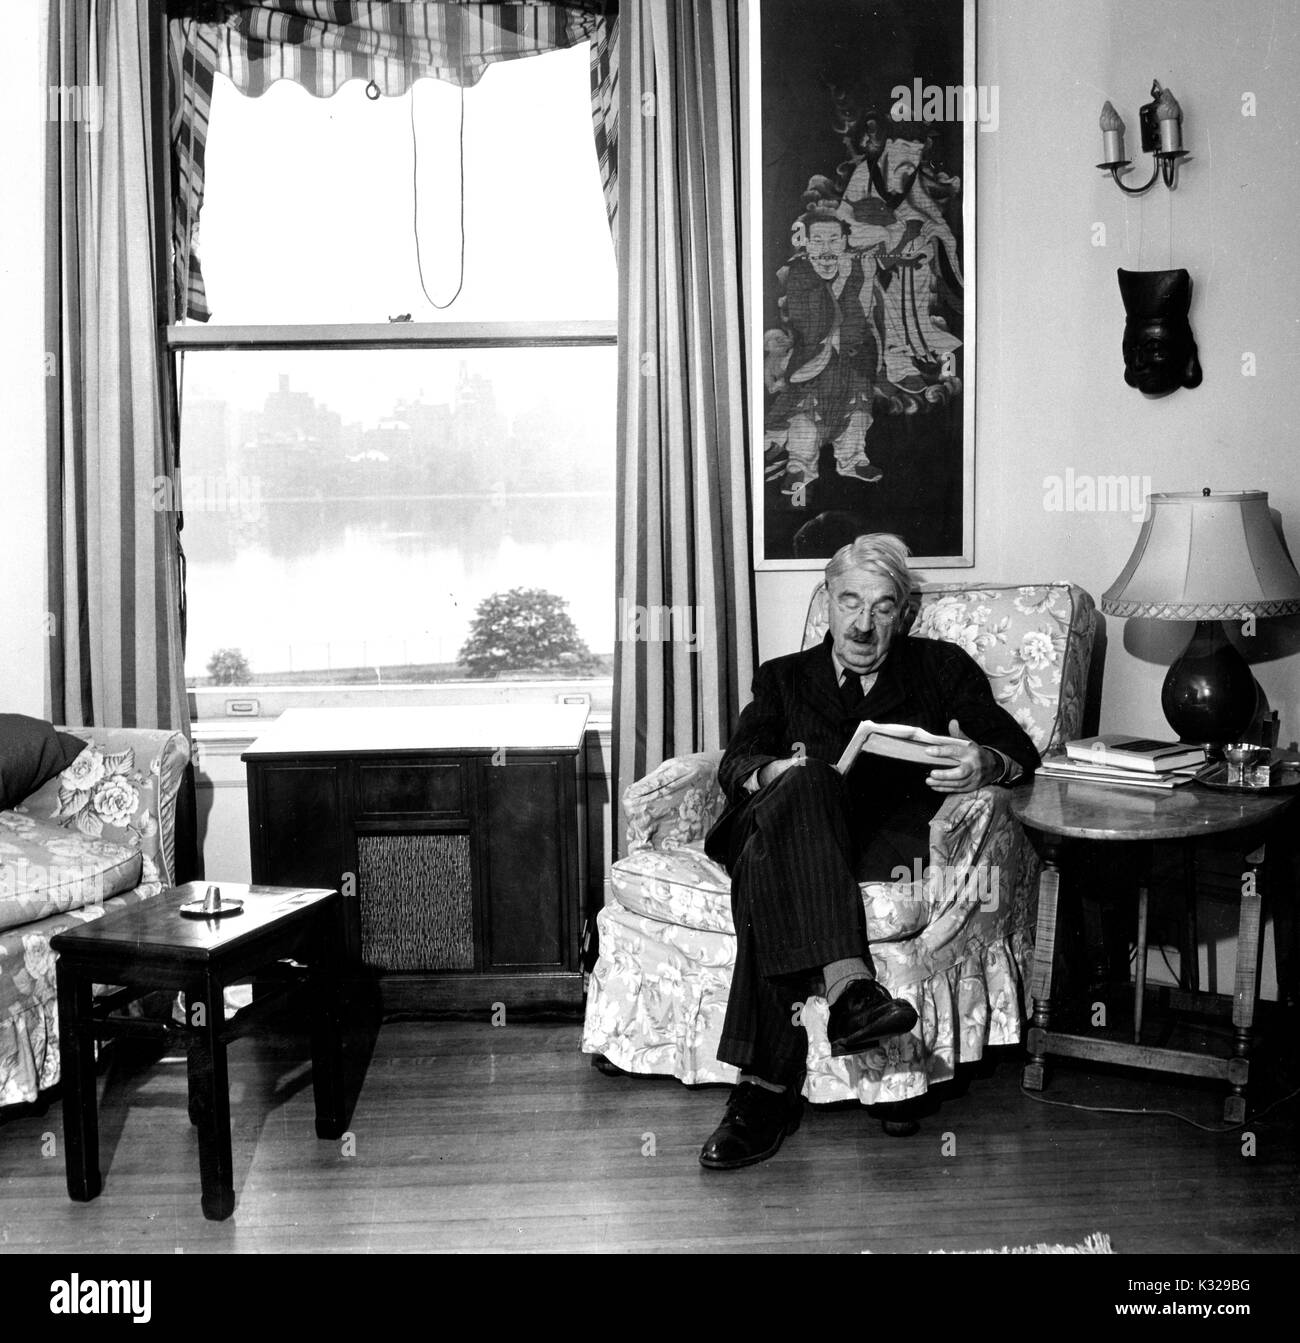 Ehrliches Porträt der amerikanische Philosoph, Psychologe und pädagogischen Reformator John Dewey in seinem Haus lesen, 1946 sitzen. Stockfoto